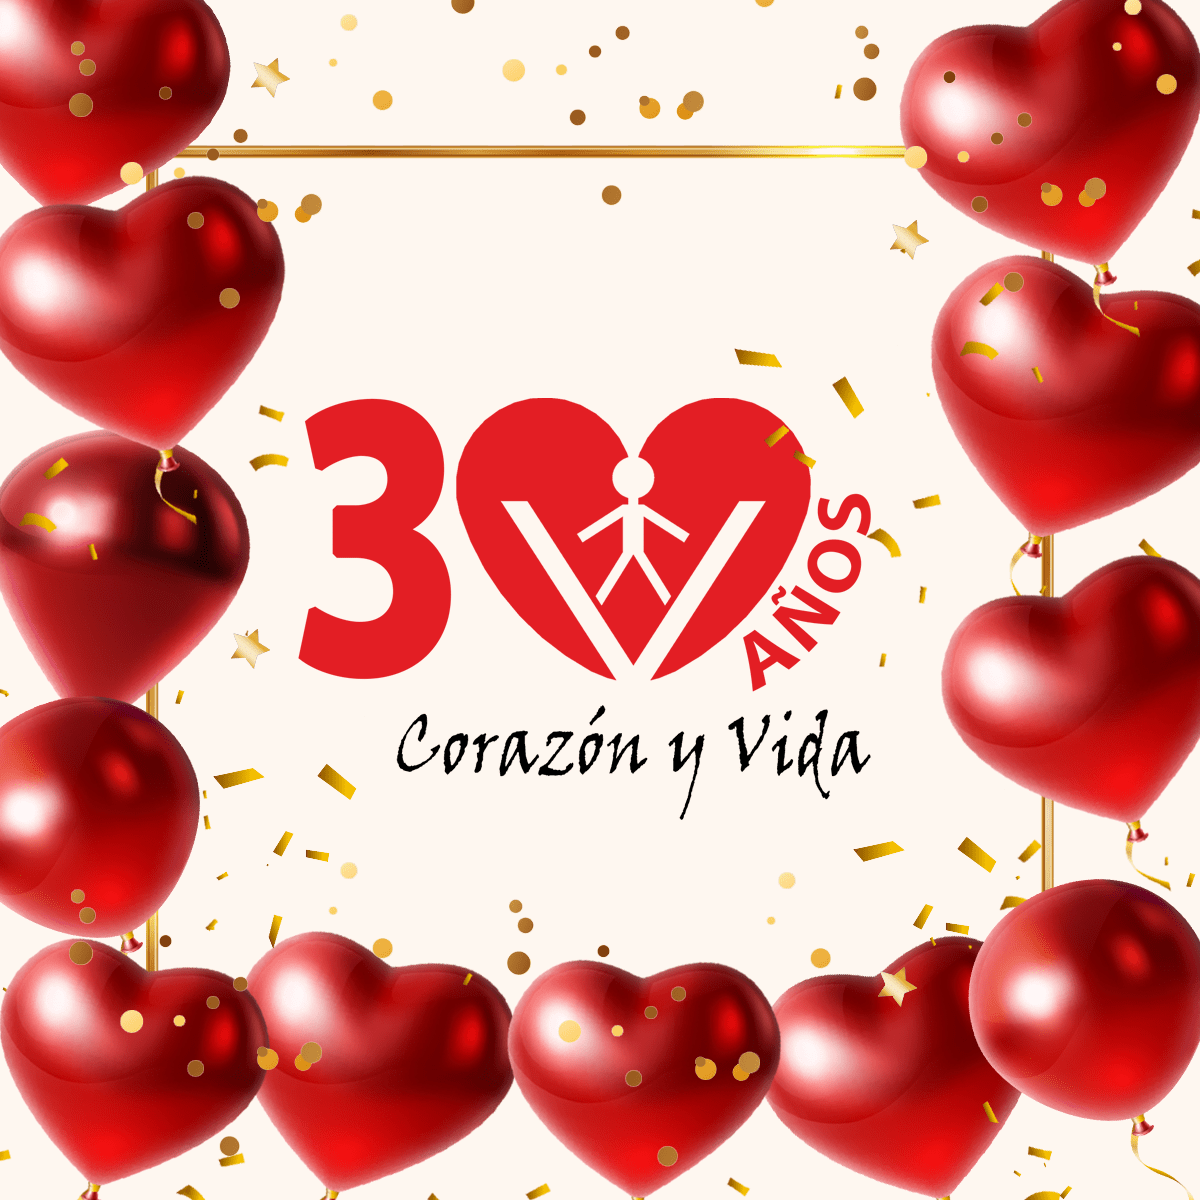 la asociacion corazon y vida celebra su 30 aniversario